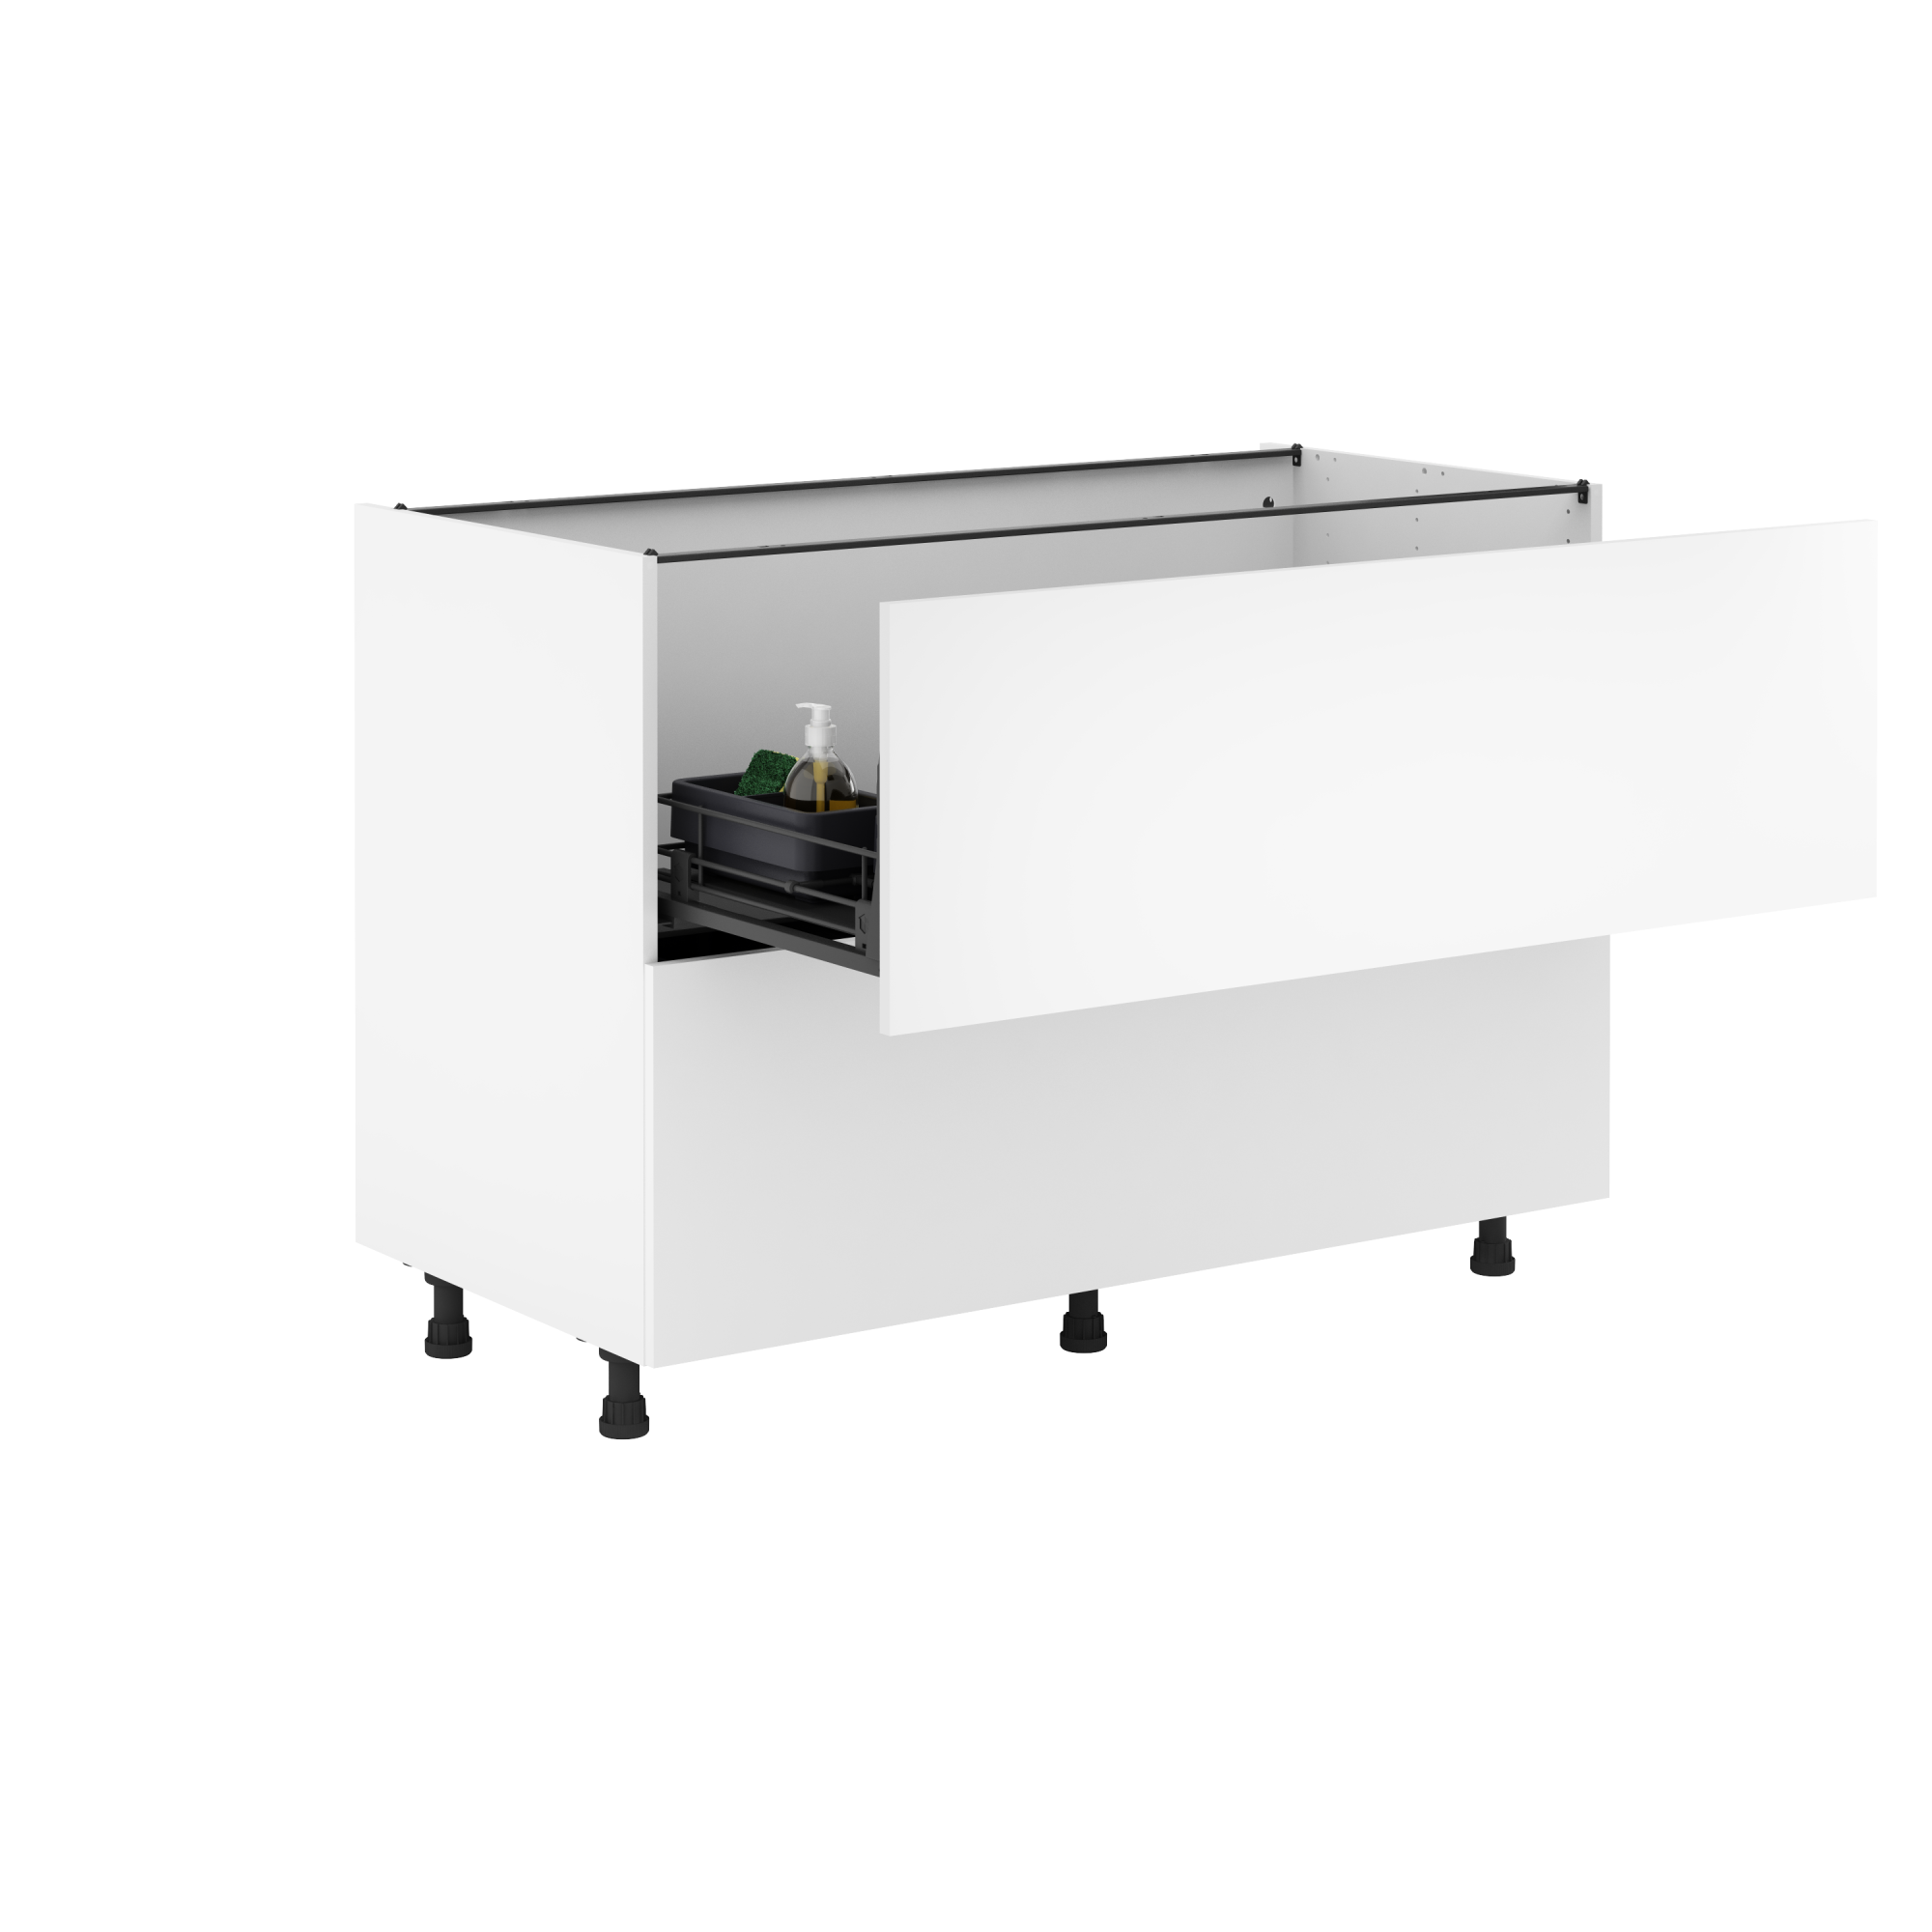  WENKO Estante Bajo fregadero extraible 45x45x12 cms, Metal,  White, 45 x 45 x 23 cm : Home & Kitchen